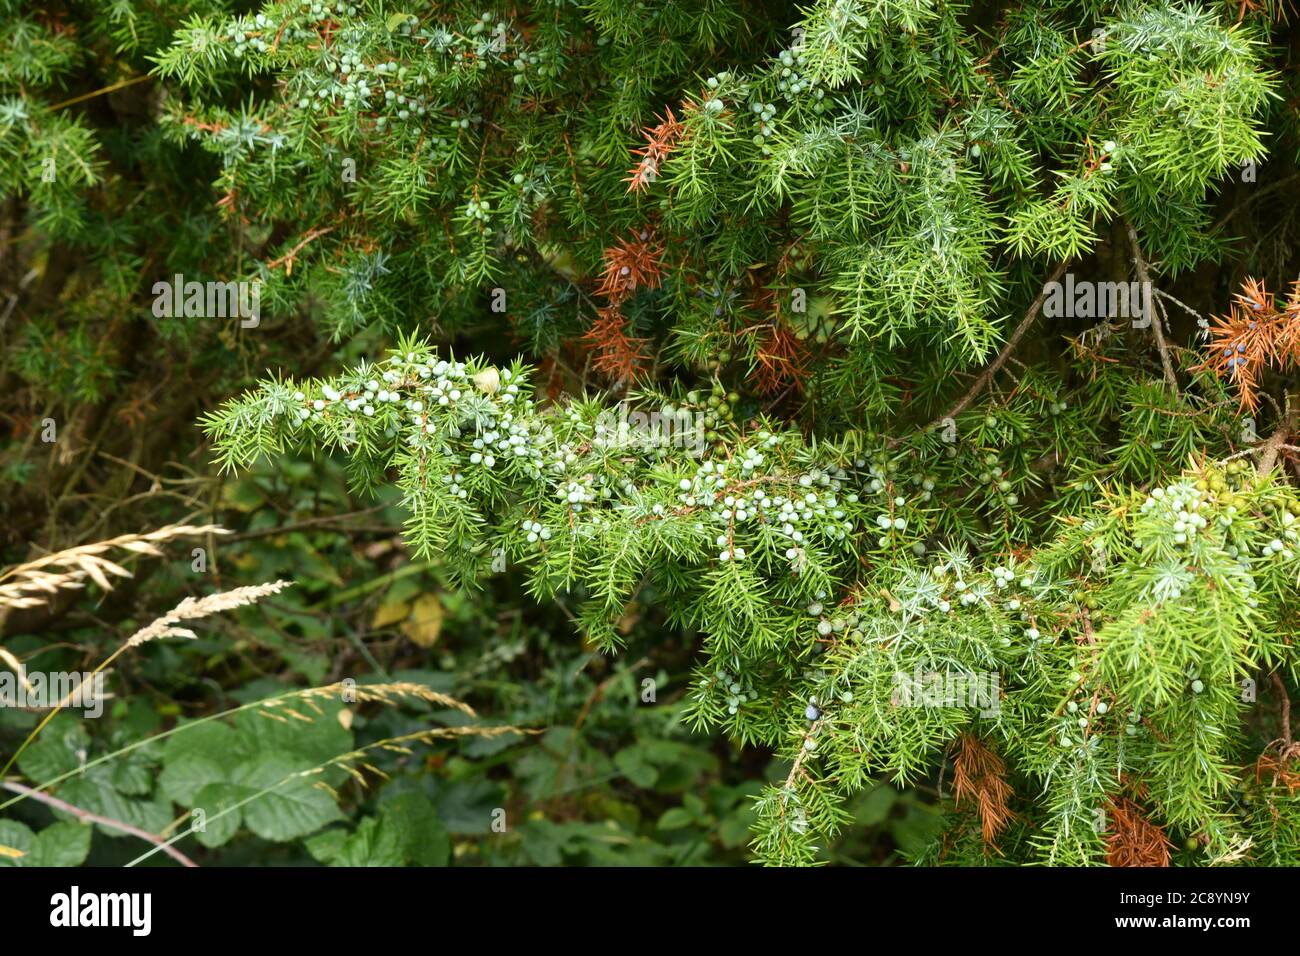 Stark beladene Äste eines Wacholderbaumes (Juniperus communis), bedeckt mit grünen Beeren.einer von drei einheimischen immergrünen Nadelbäumen gedeiht er auf Kreide l Stockfoto